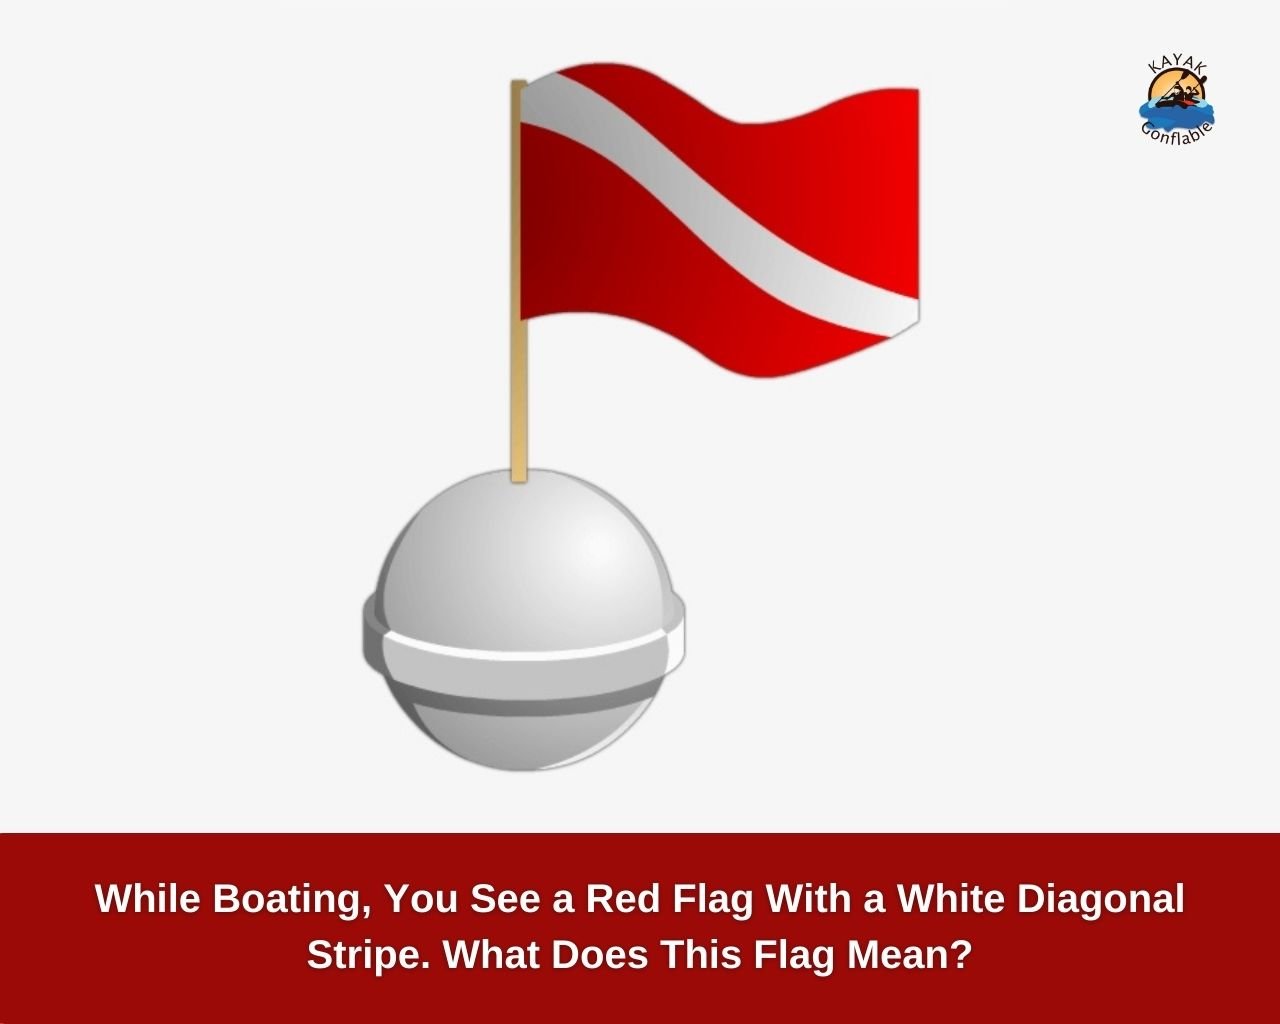 Pendant la navigation, vous voyez un drapeau rouge avec une bande diagonale blanche. Que signifie ce drapeau_